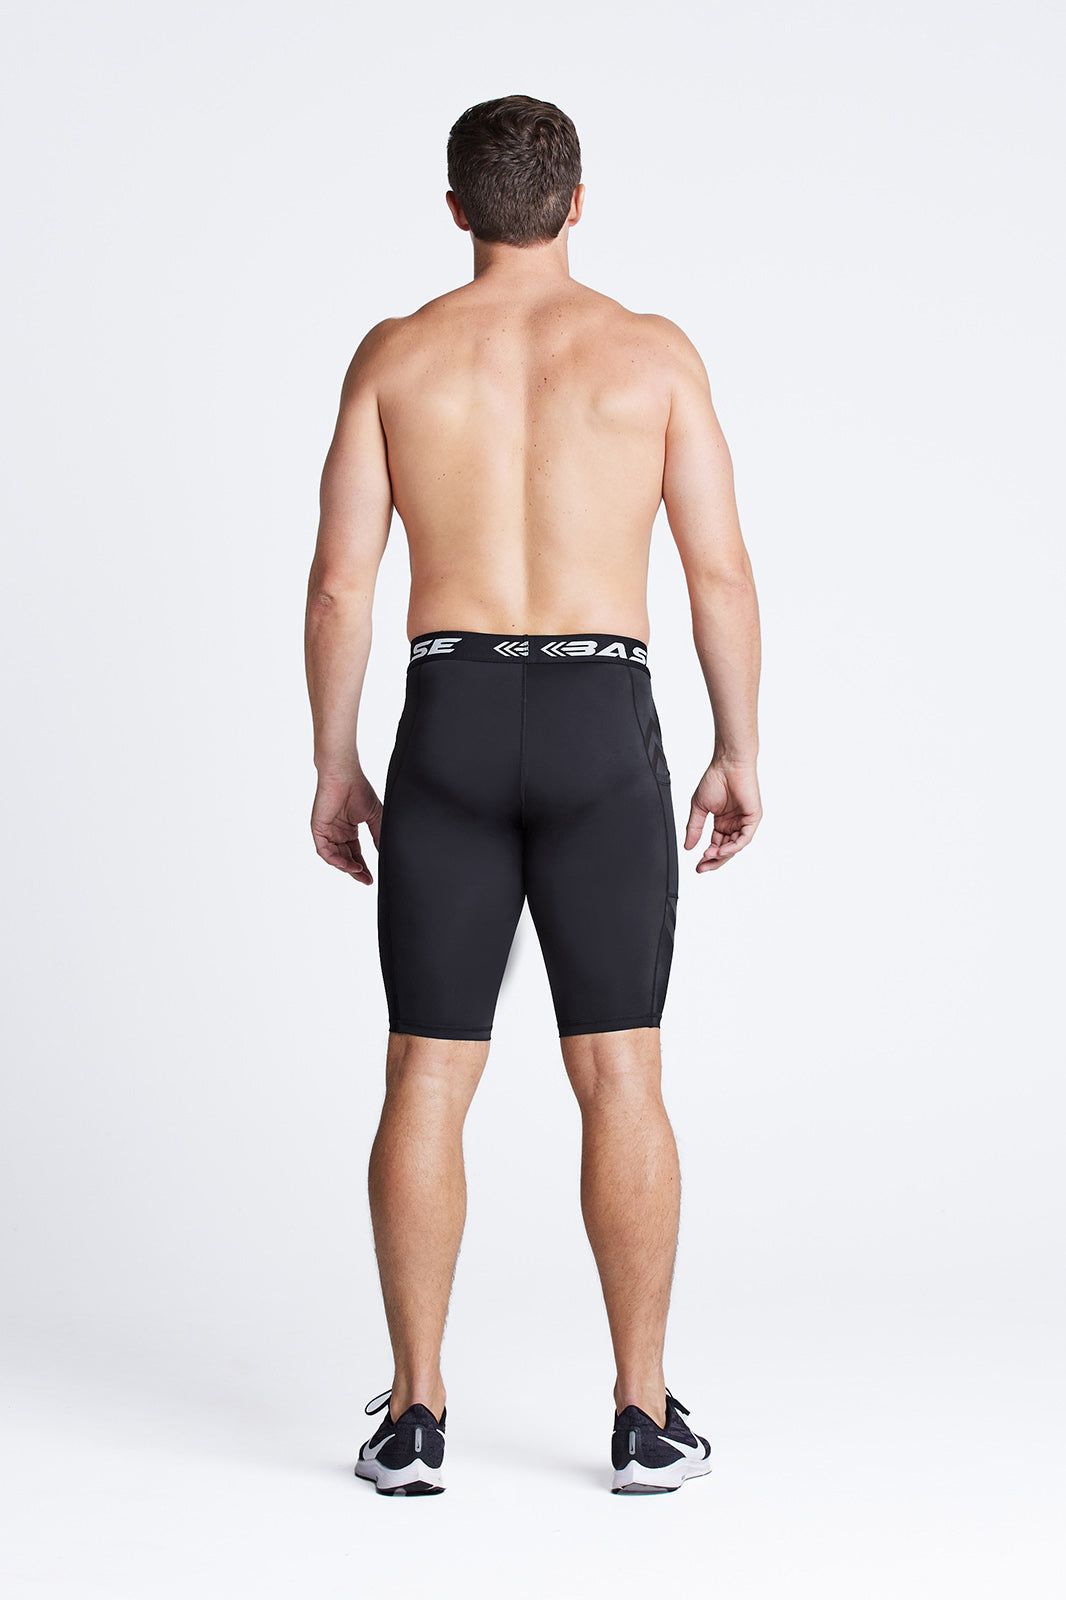 BASE Men's Motion Compression Shorts - Black – BASE Compression